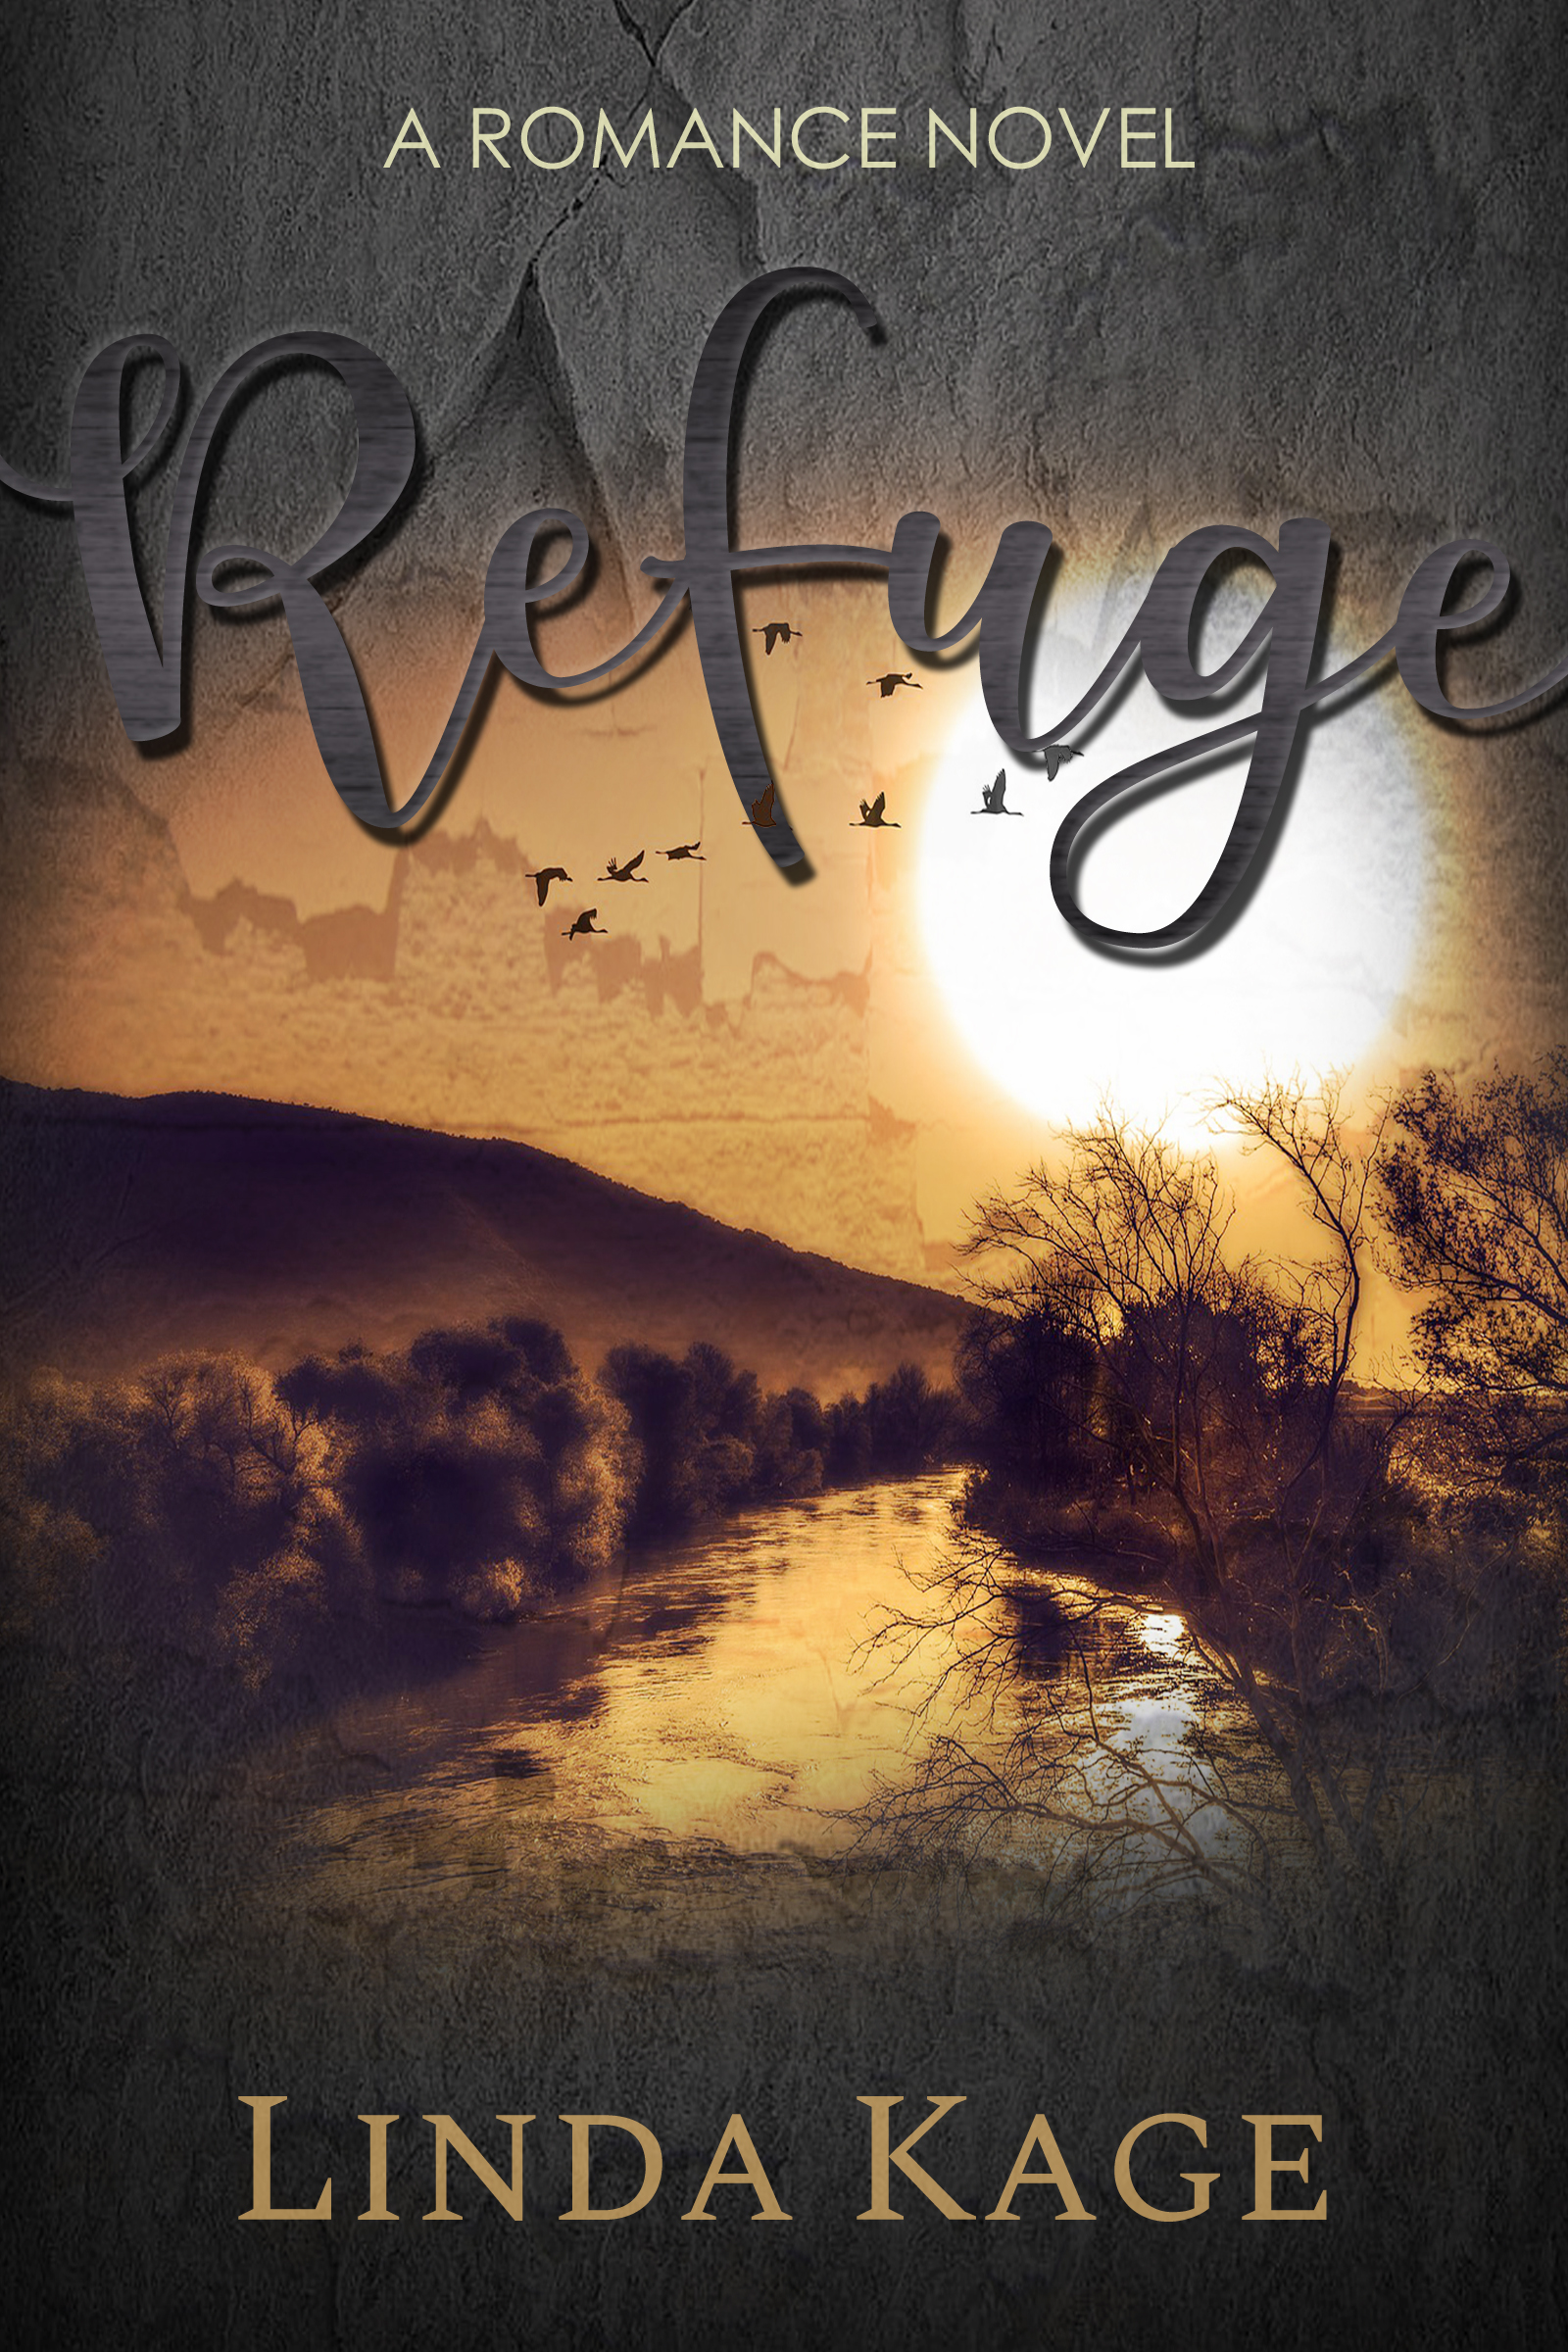 Refuge Cover